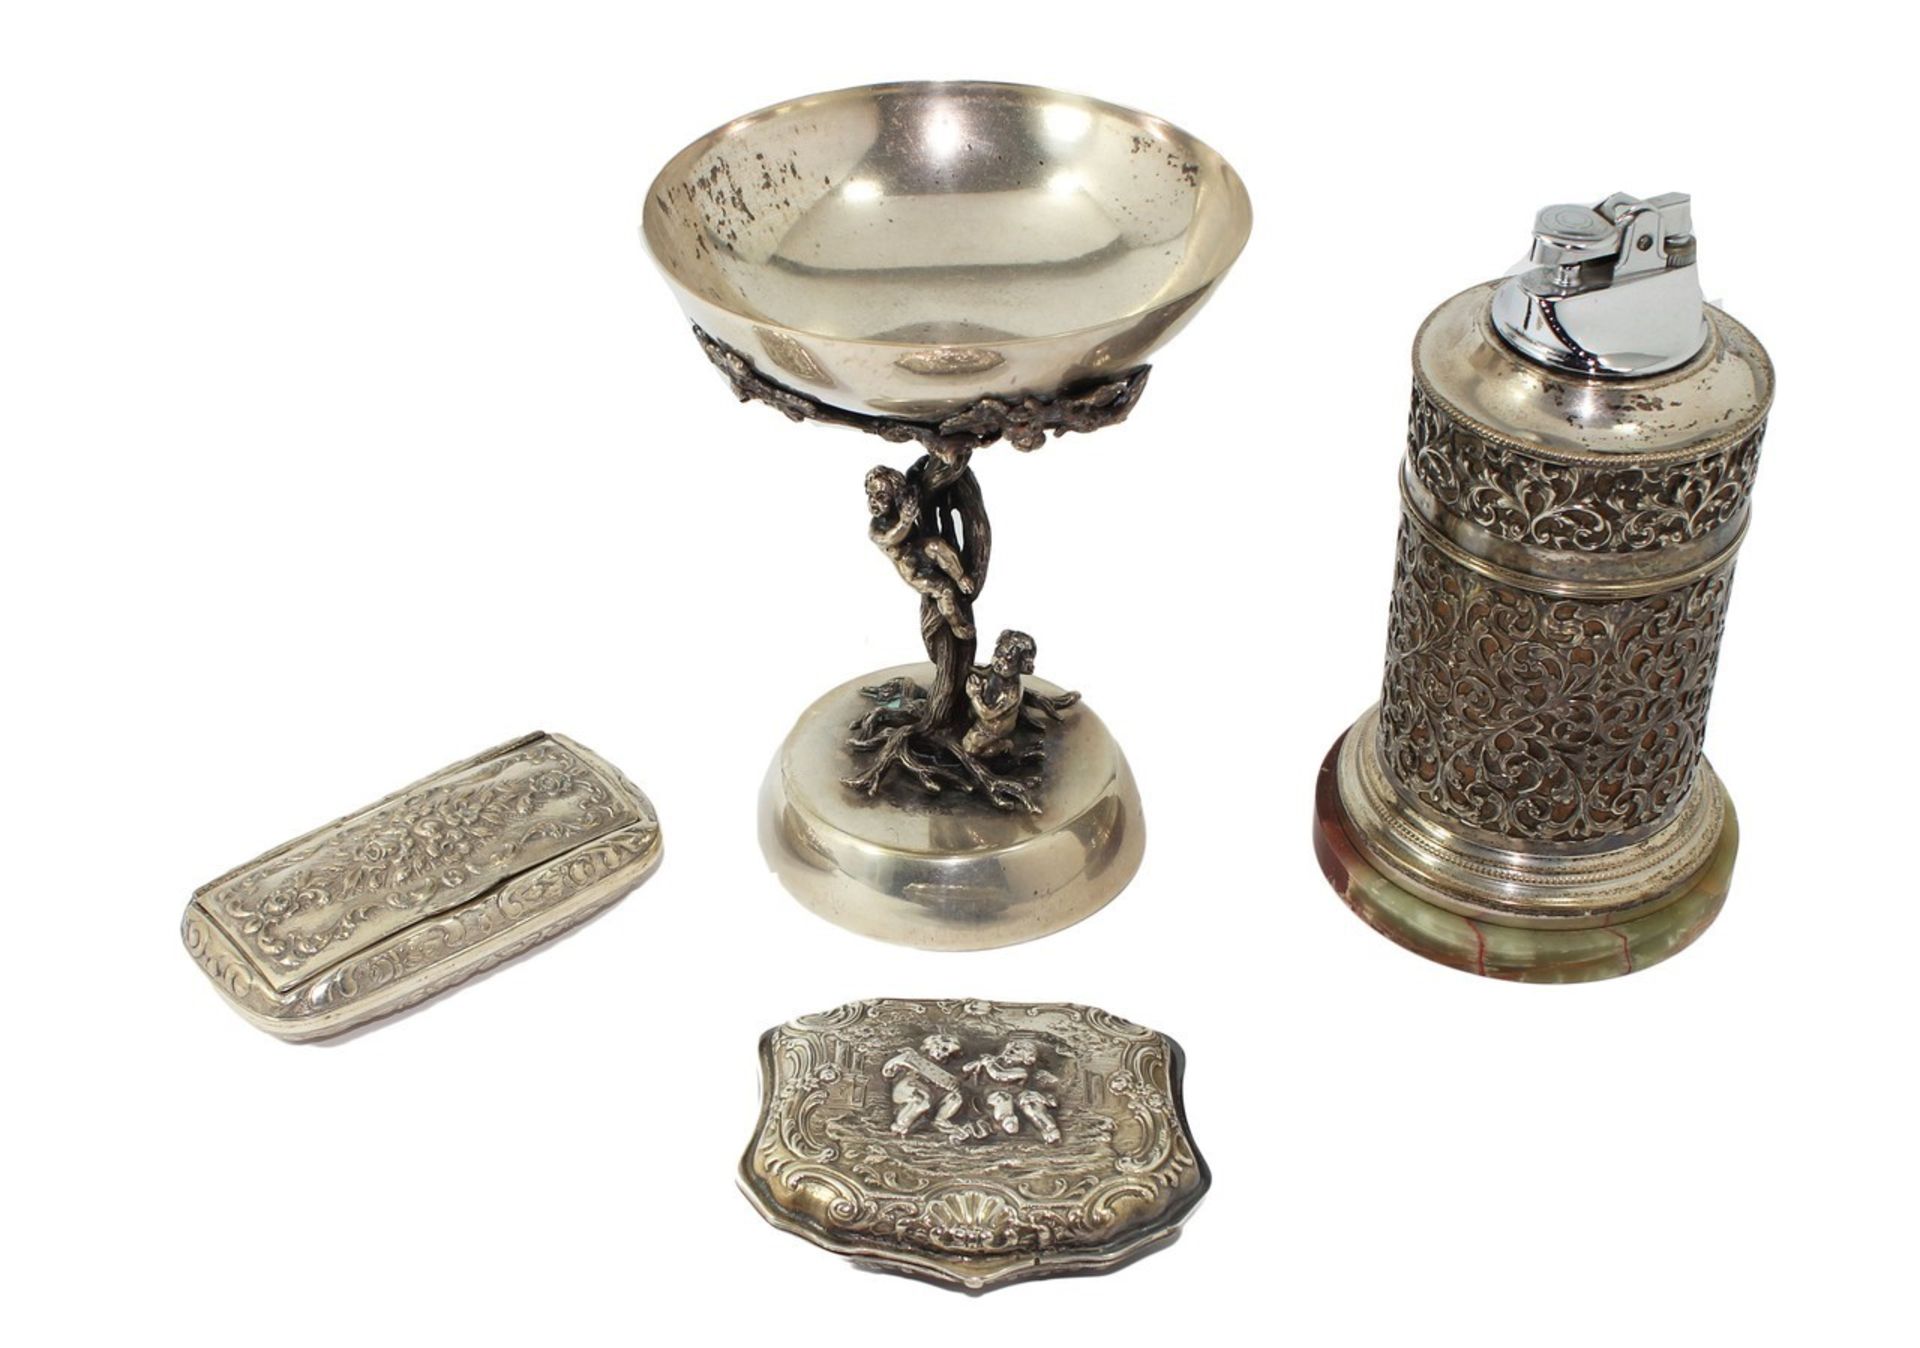 Collezione di tabacchiere, scatoline e piccoli oggetti in metallo e argento antichi, piccoli